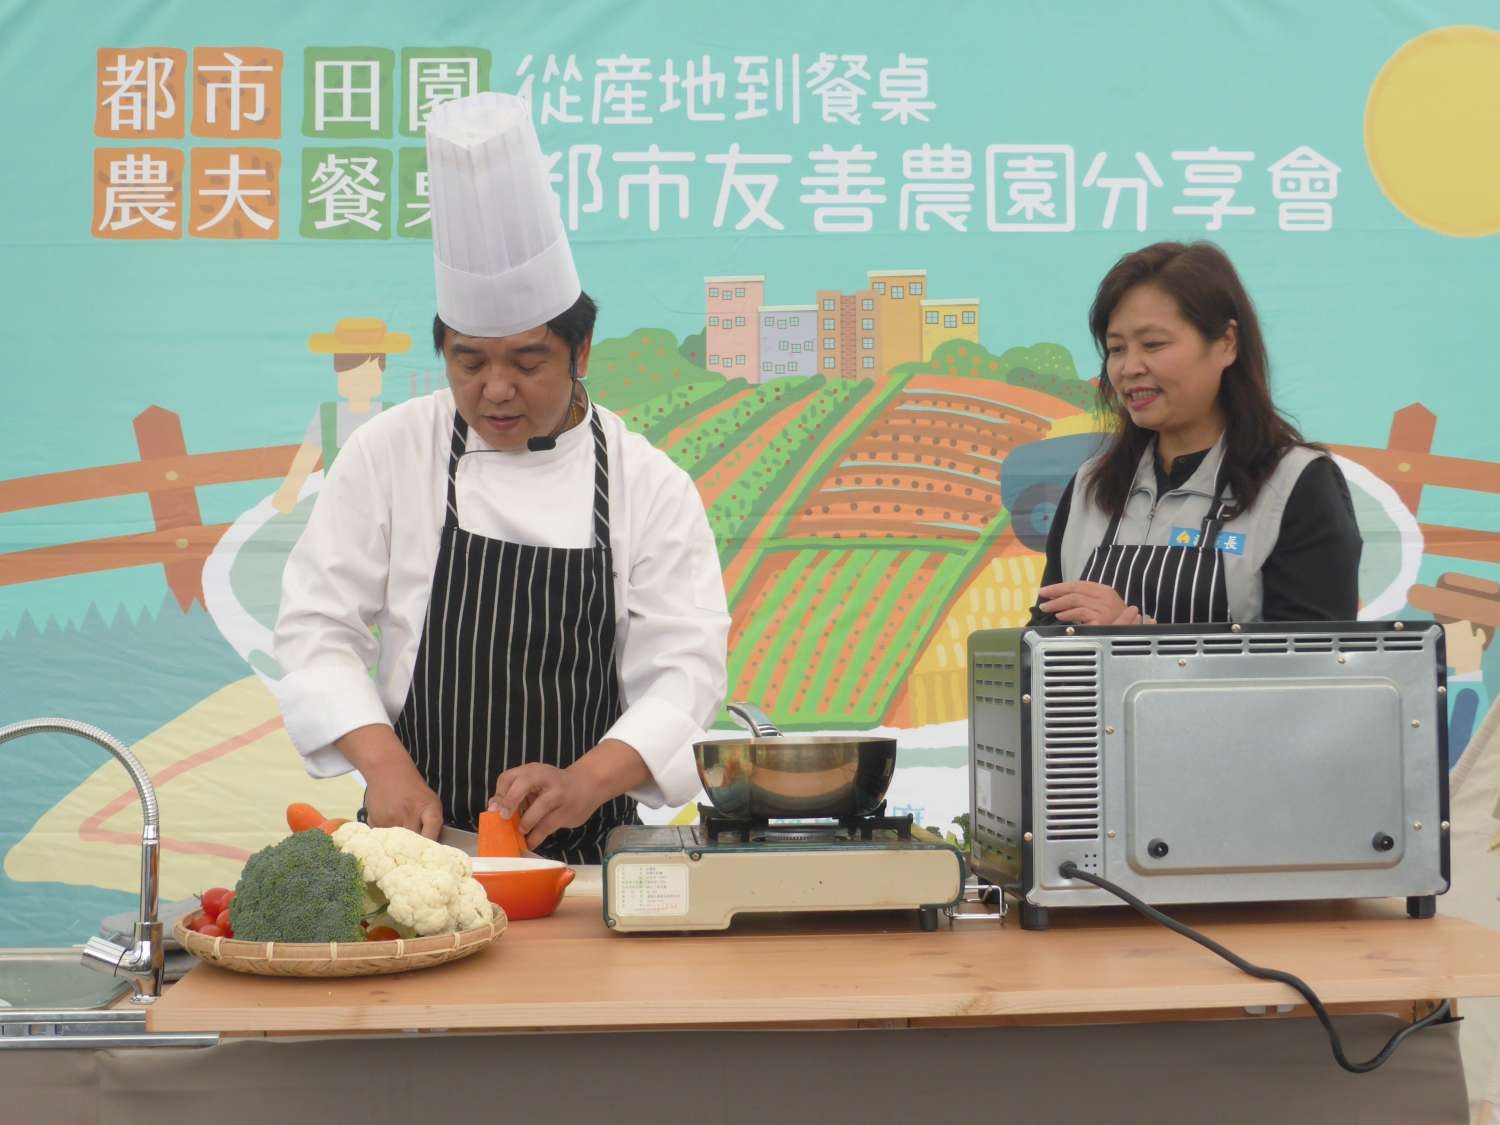 副市長與五星級專業廚師劉博智於現場示範「奶油焗烤綜合蔬菜」健康創意料理。